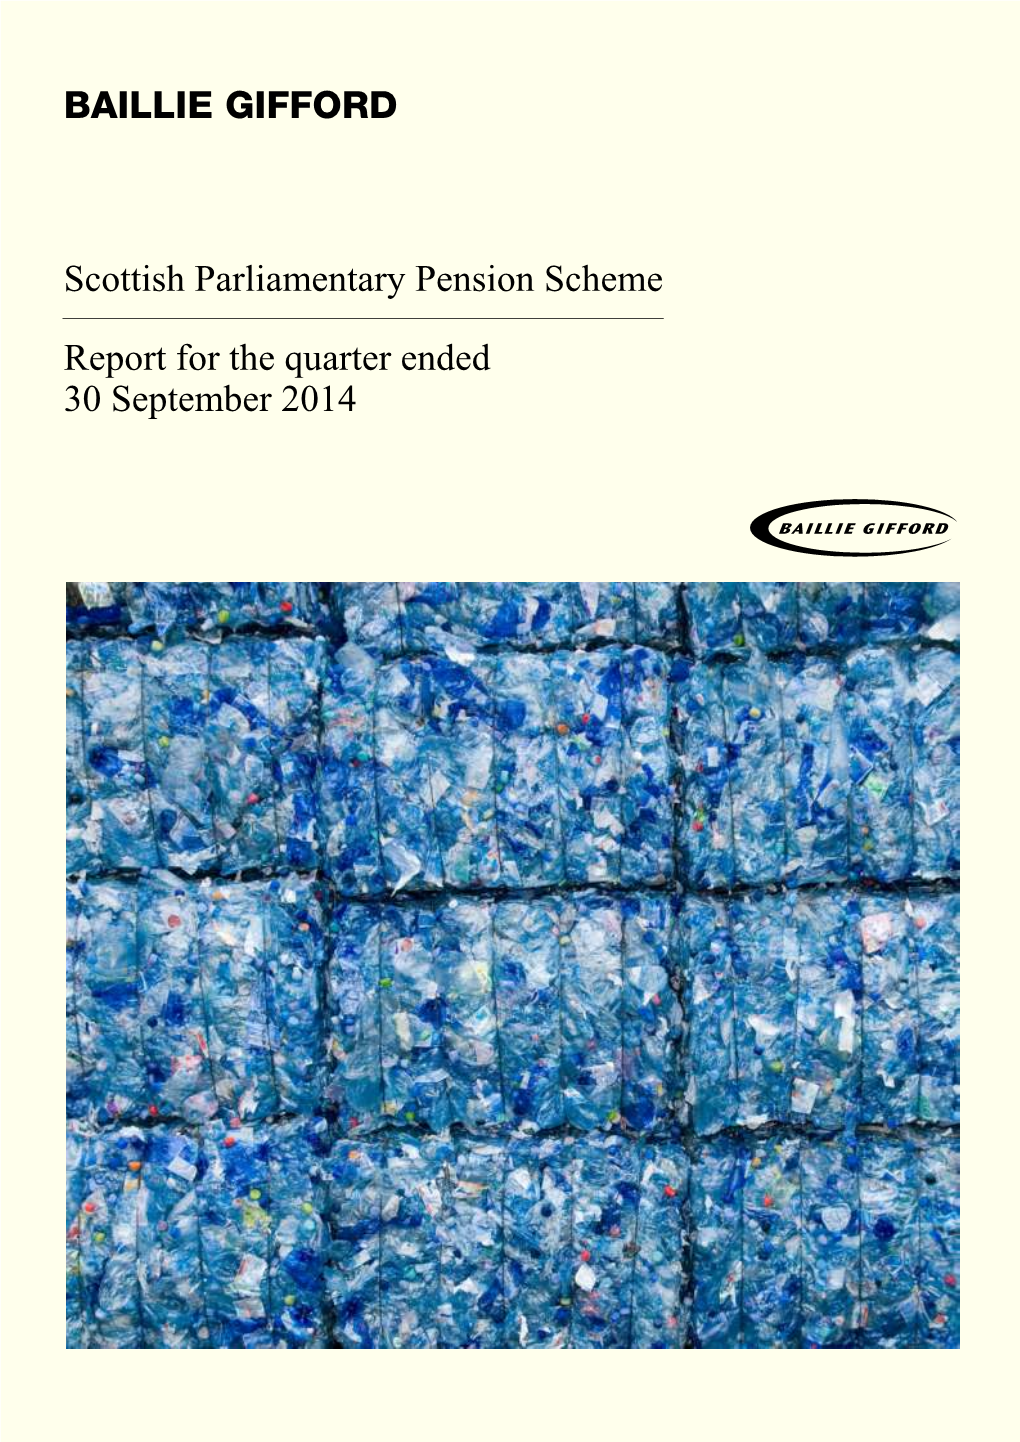 BAILLIE GIFFORD Scottish Parliamentary Pension Scheme